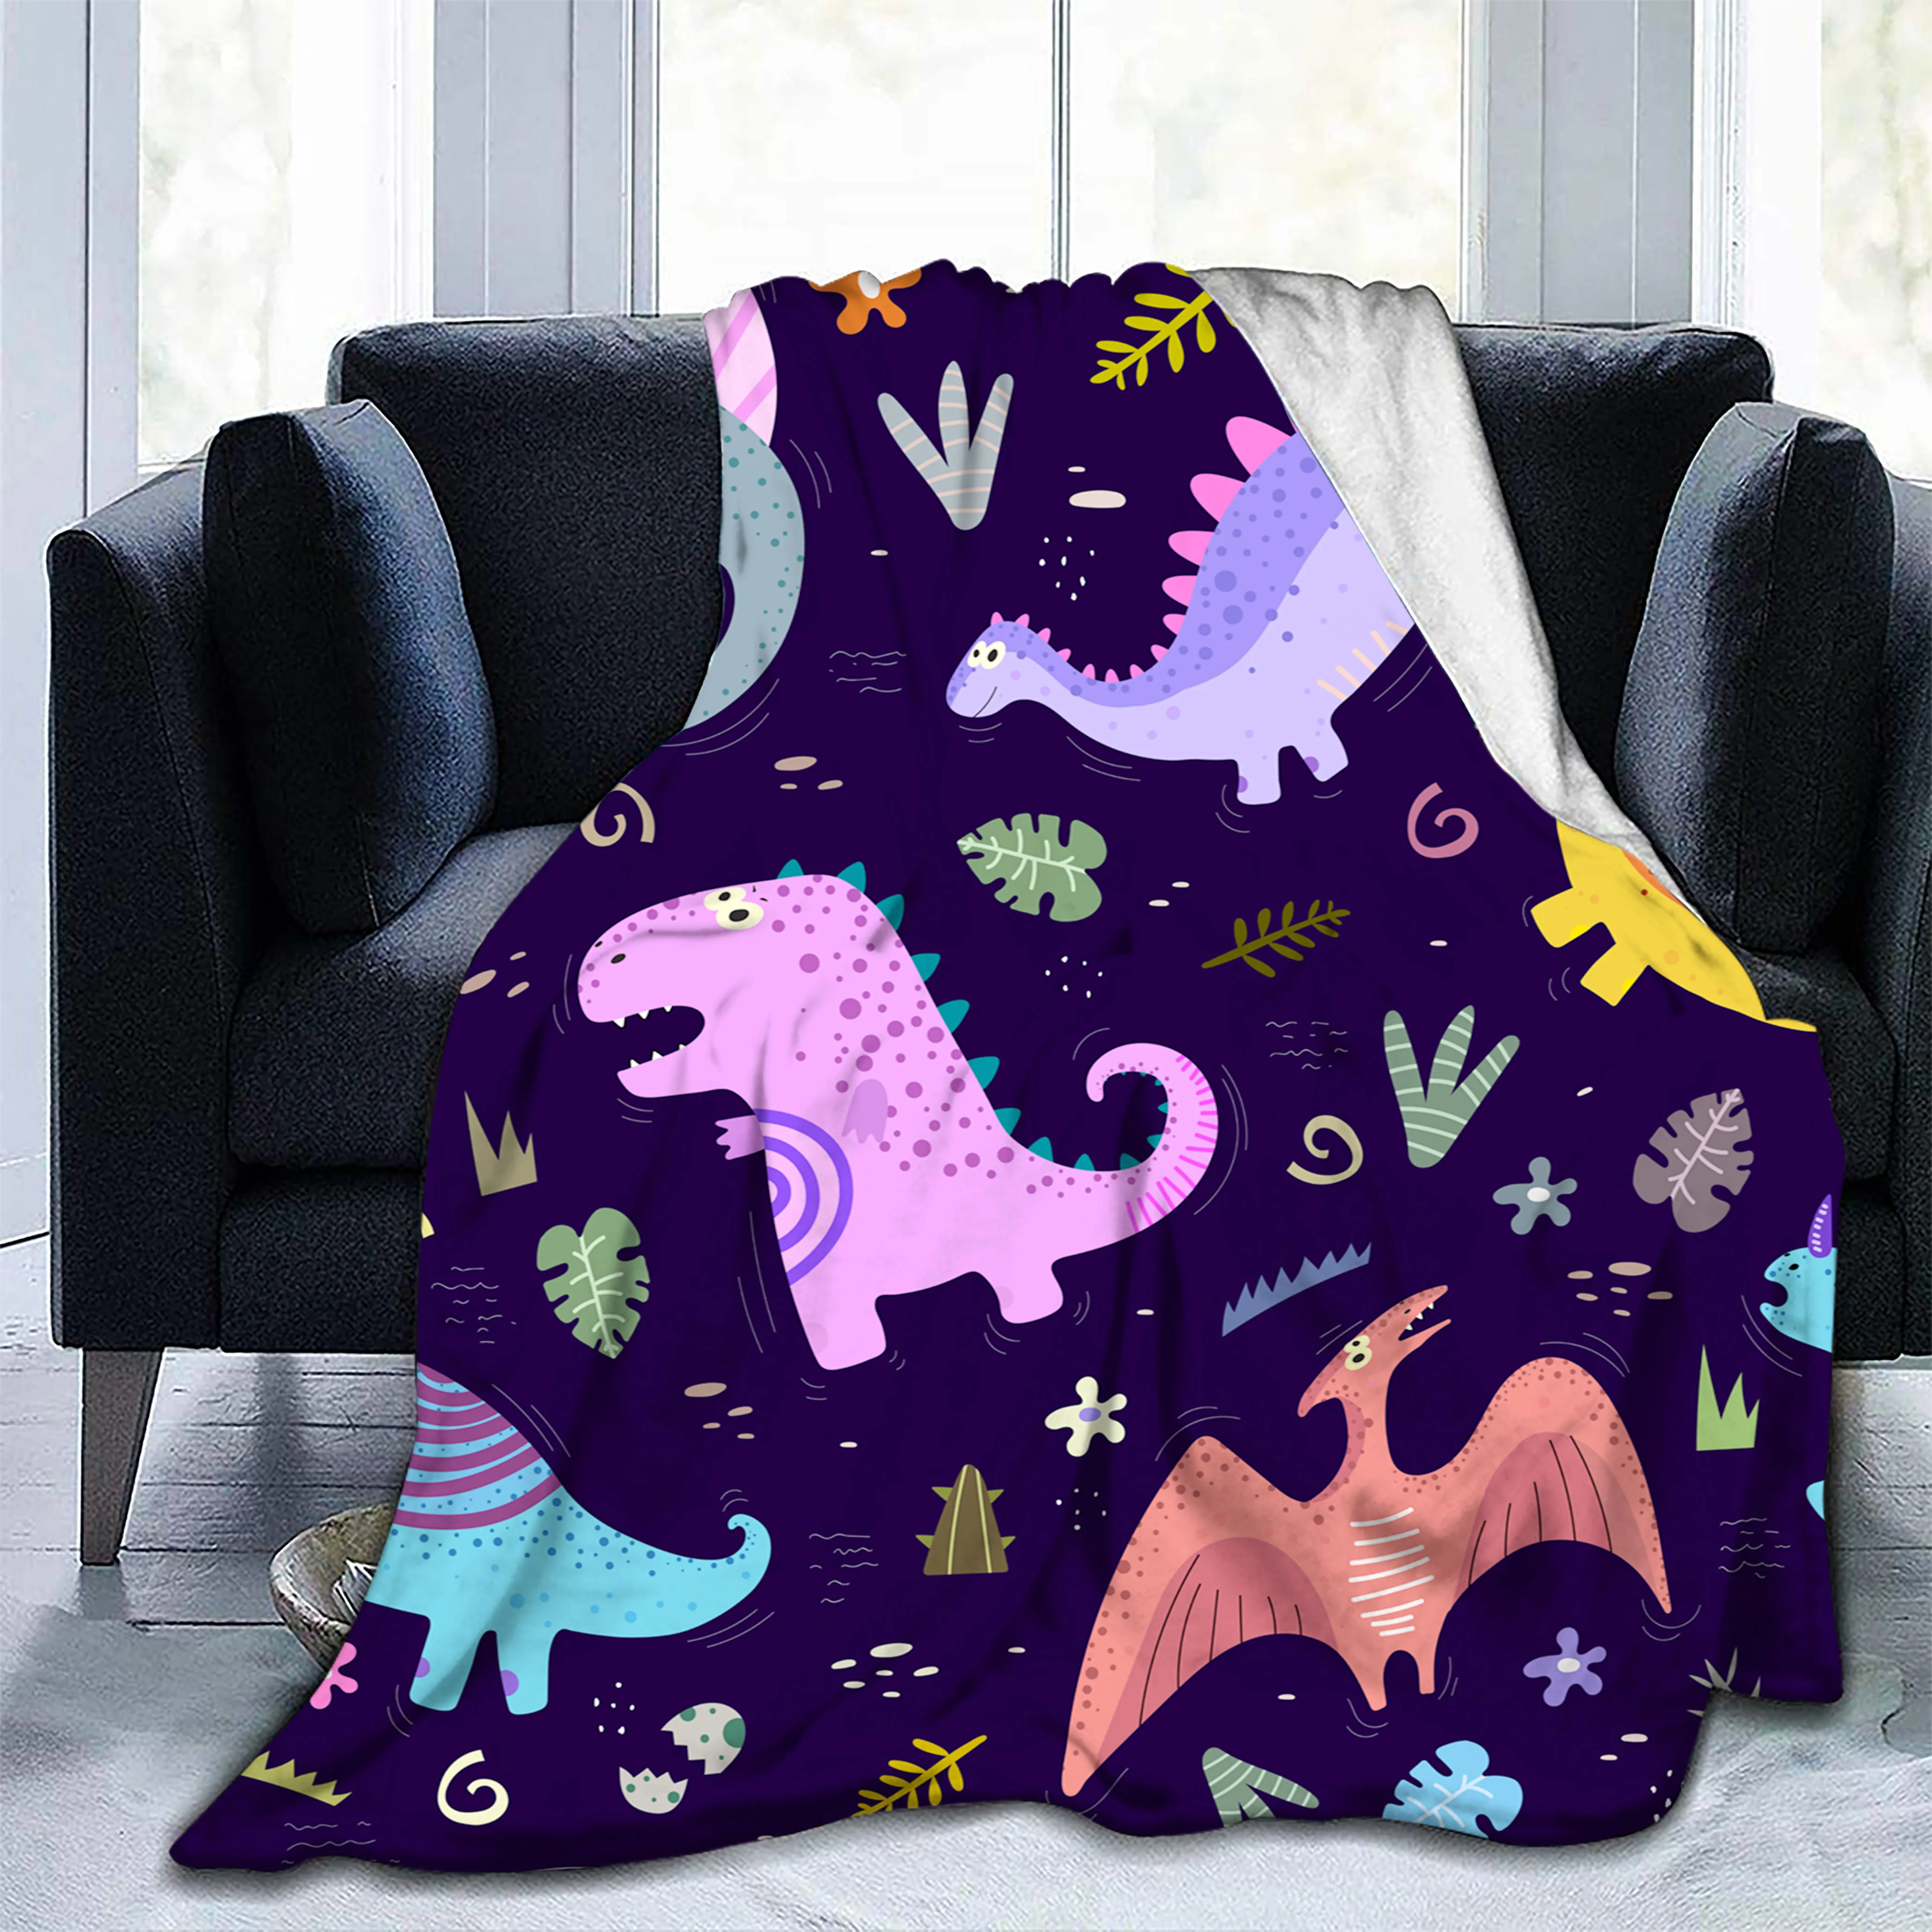 

SHUIHAN динозавр плед одеяло дети мальчики животное Фланелевое Флисовое одеяло динозавры одеяло s для дивана диван спальня гостиная